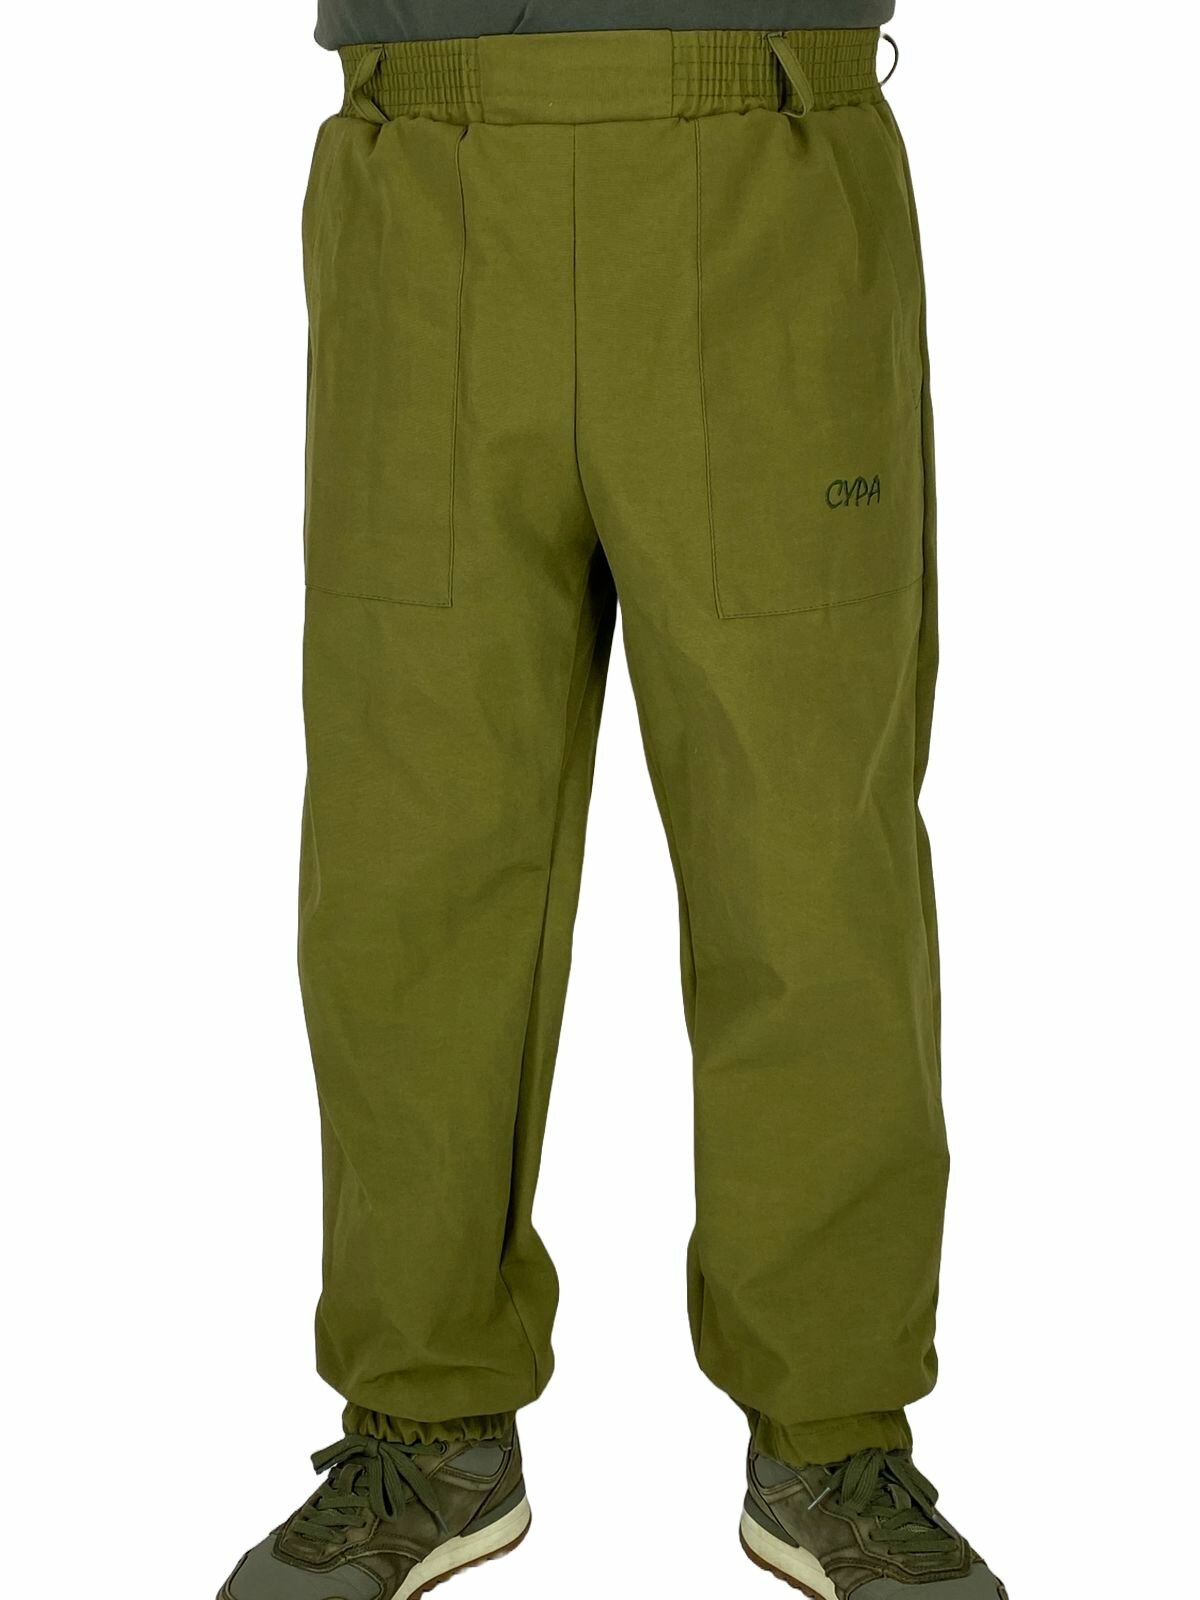 Камуфляжные брюки V2, 18 расцветок, плотный материал / рабочие брюки / камуфляжные брюки / рыболовные брюки